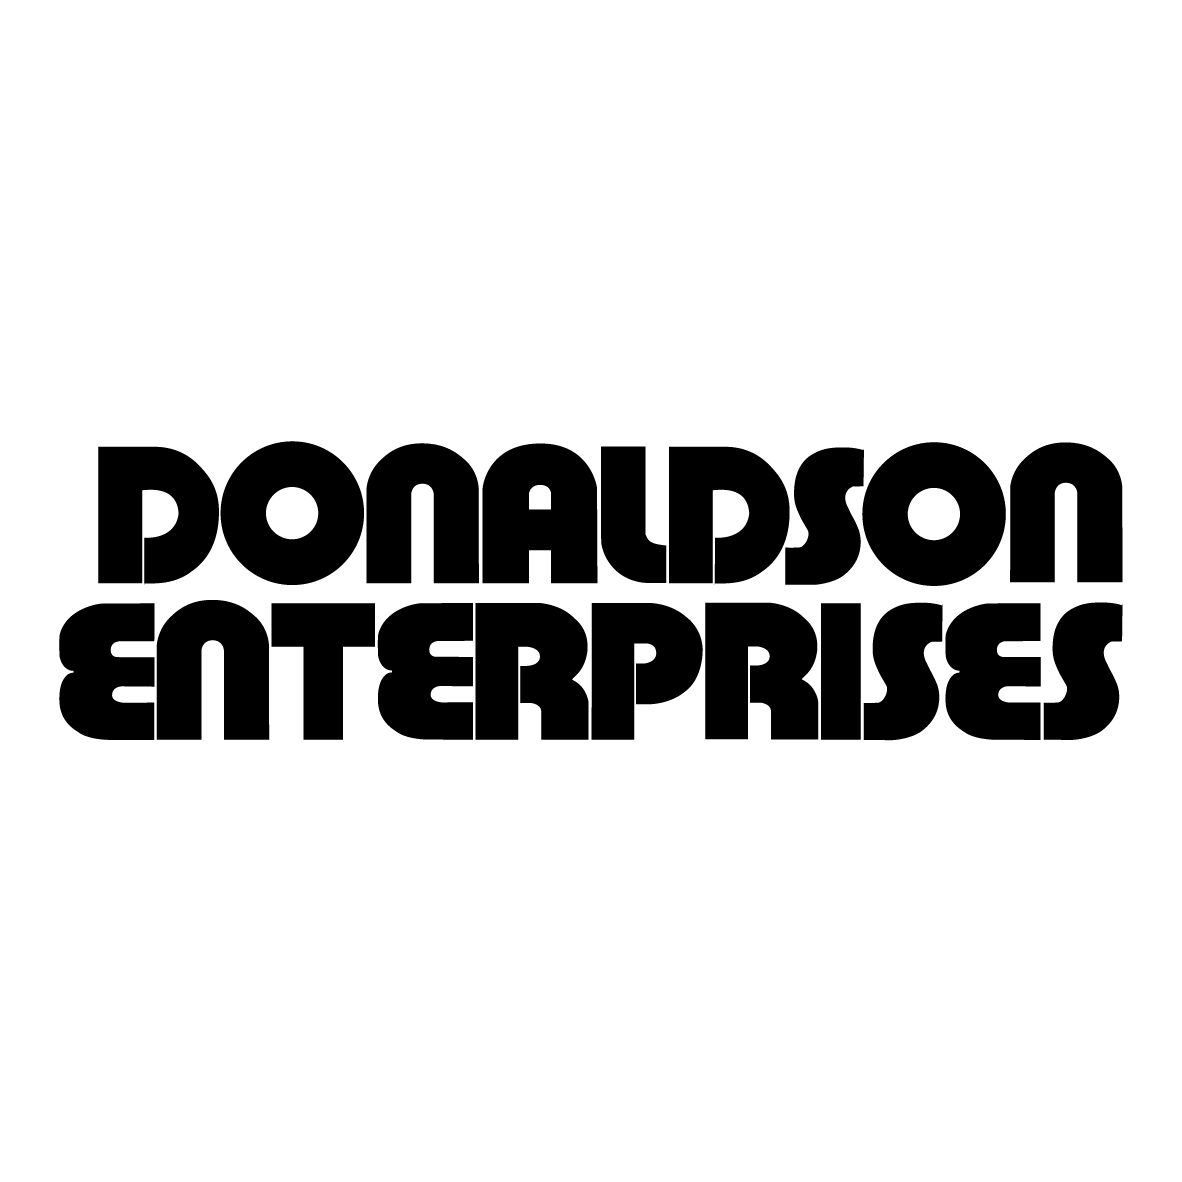 Donaldson Enterprises